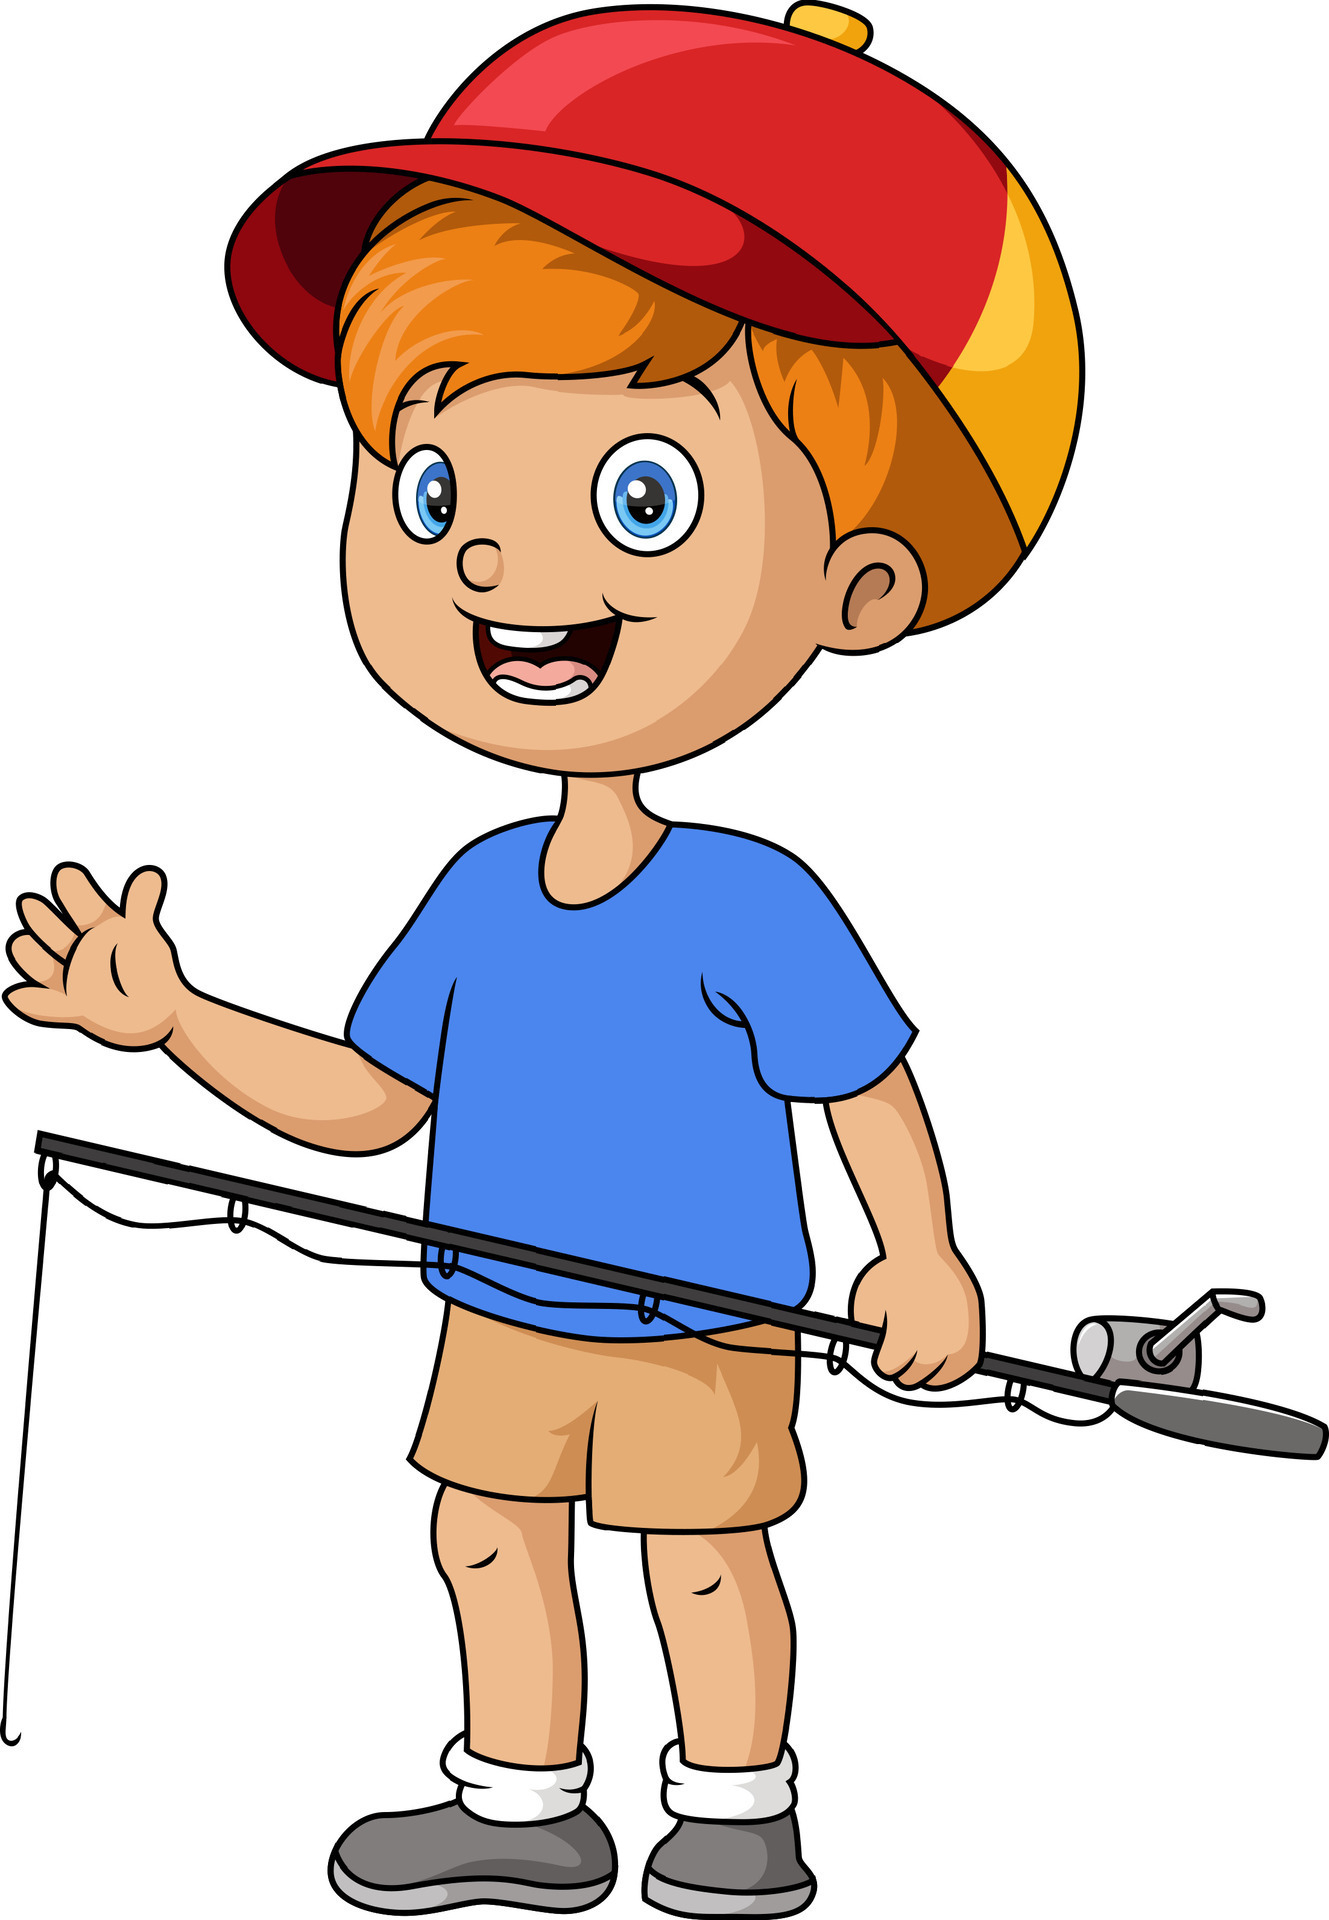 Cute little boy cartoon fishing 28237789 Vector Art at Vecteezy